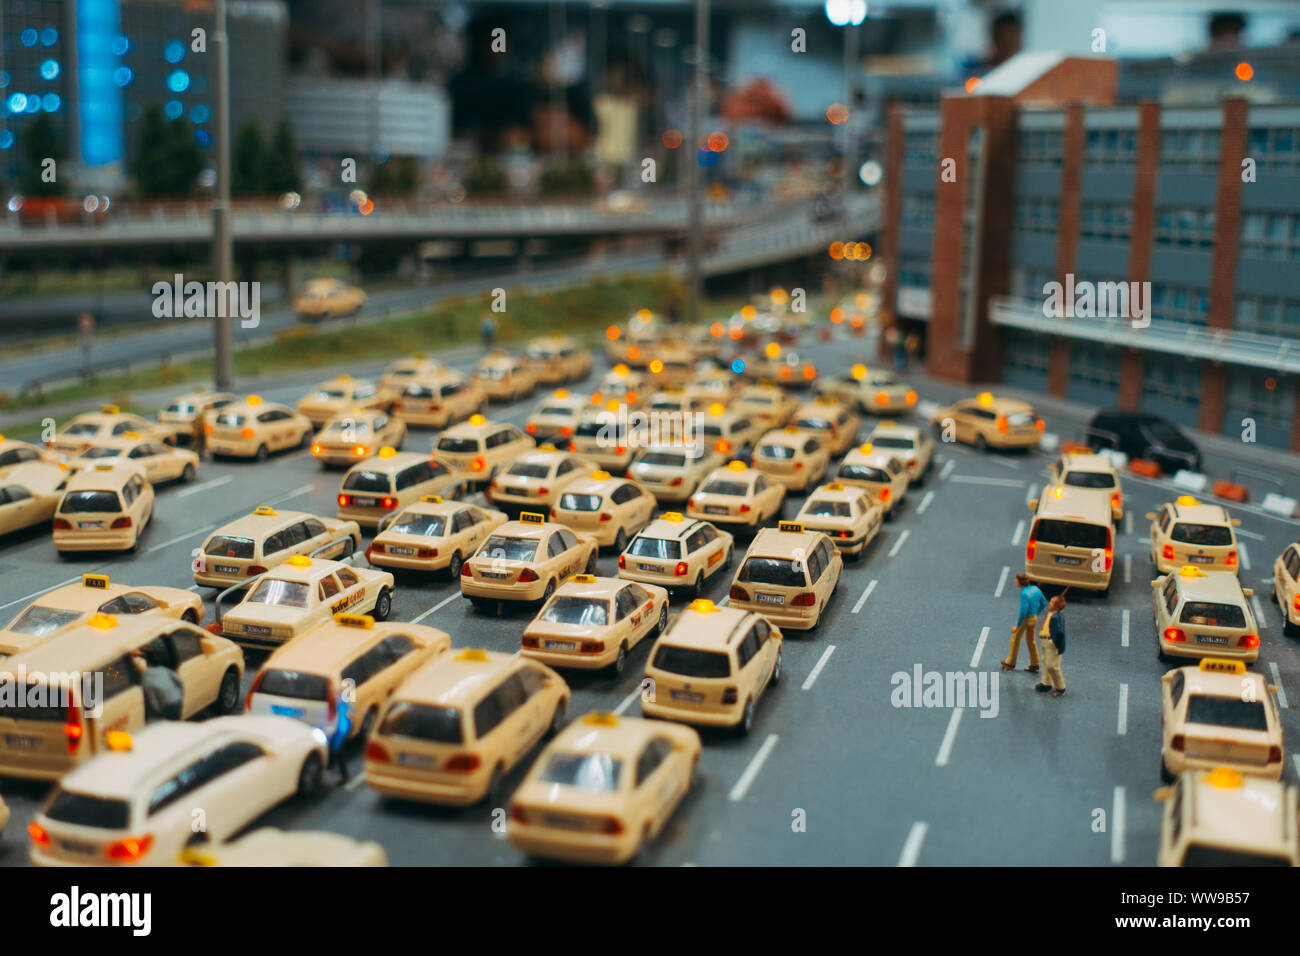 Ein Miniatur Taxistand voller Modell Taxis außerhalb von Knuffingen Airport, Miniatur Wunderland, Hamburg warten Stockfoto